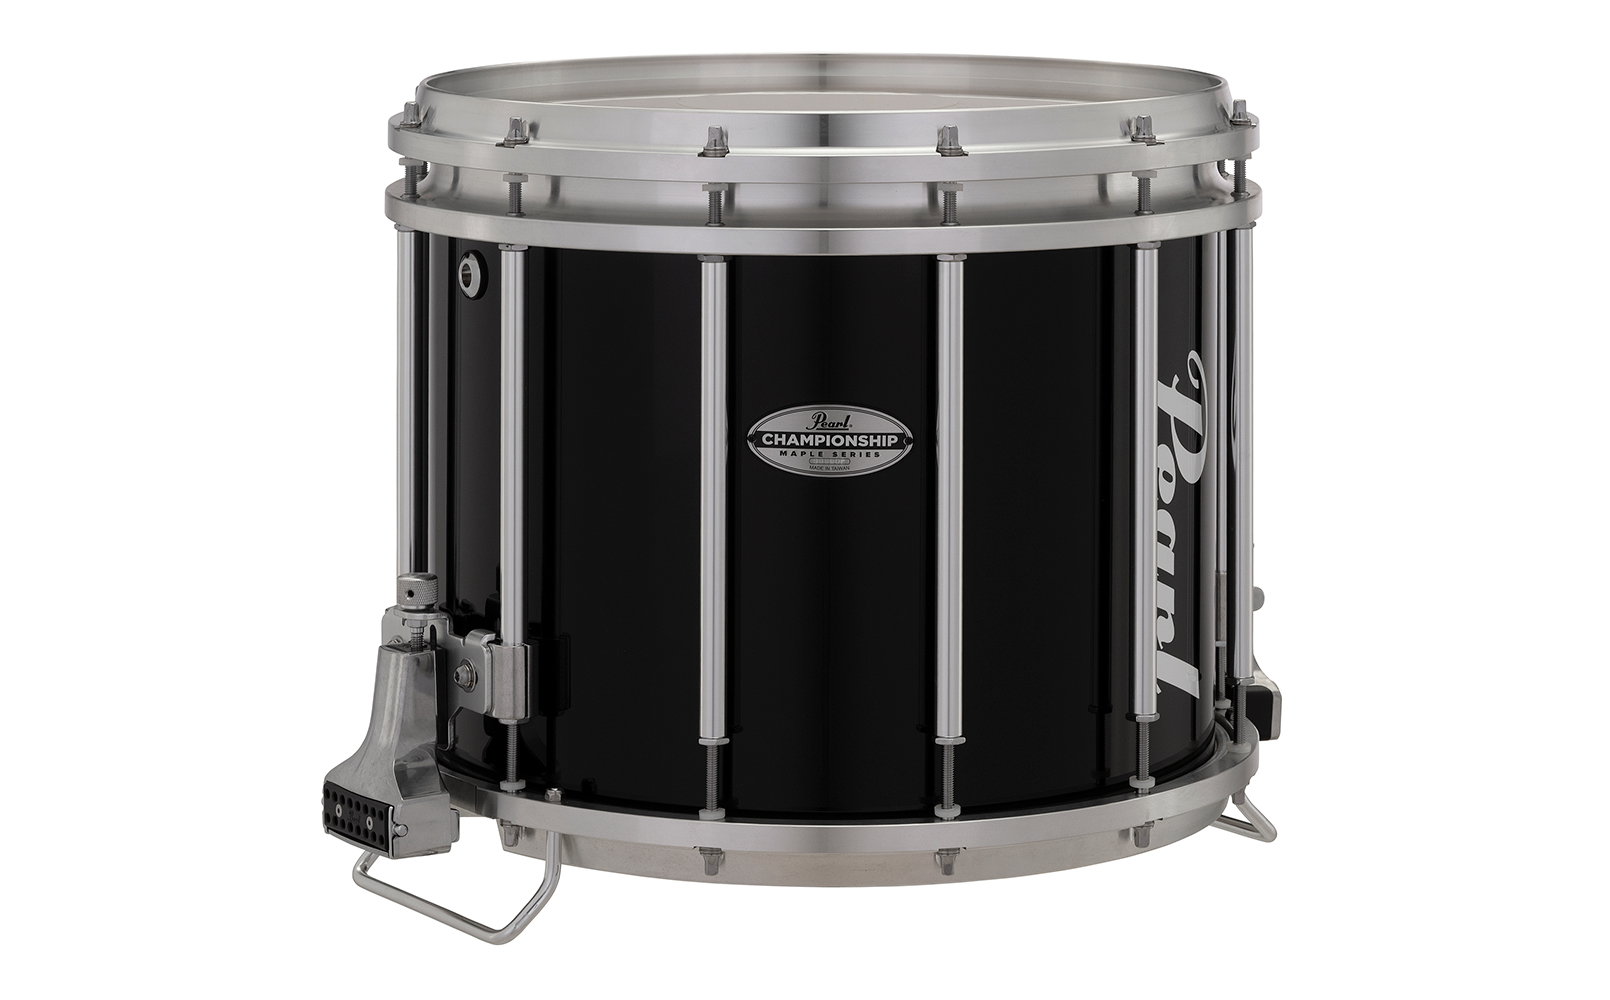 FFXM Snare Drums | パール楽器【公式サイト】Pearl Drums